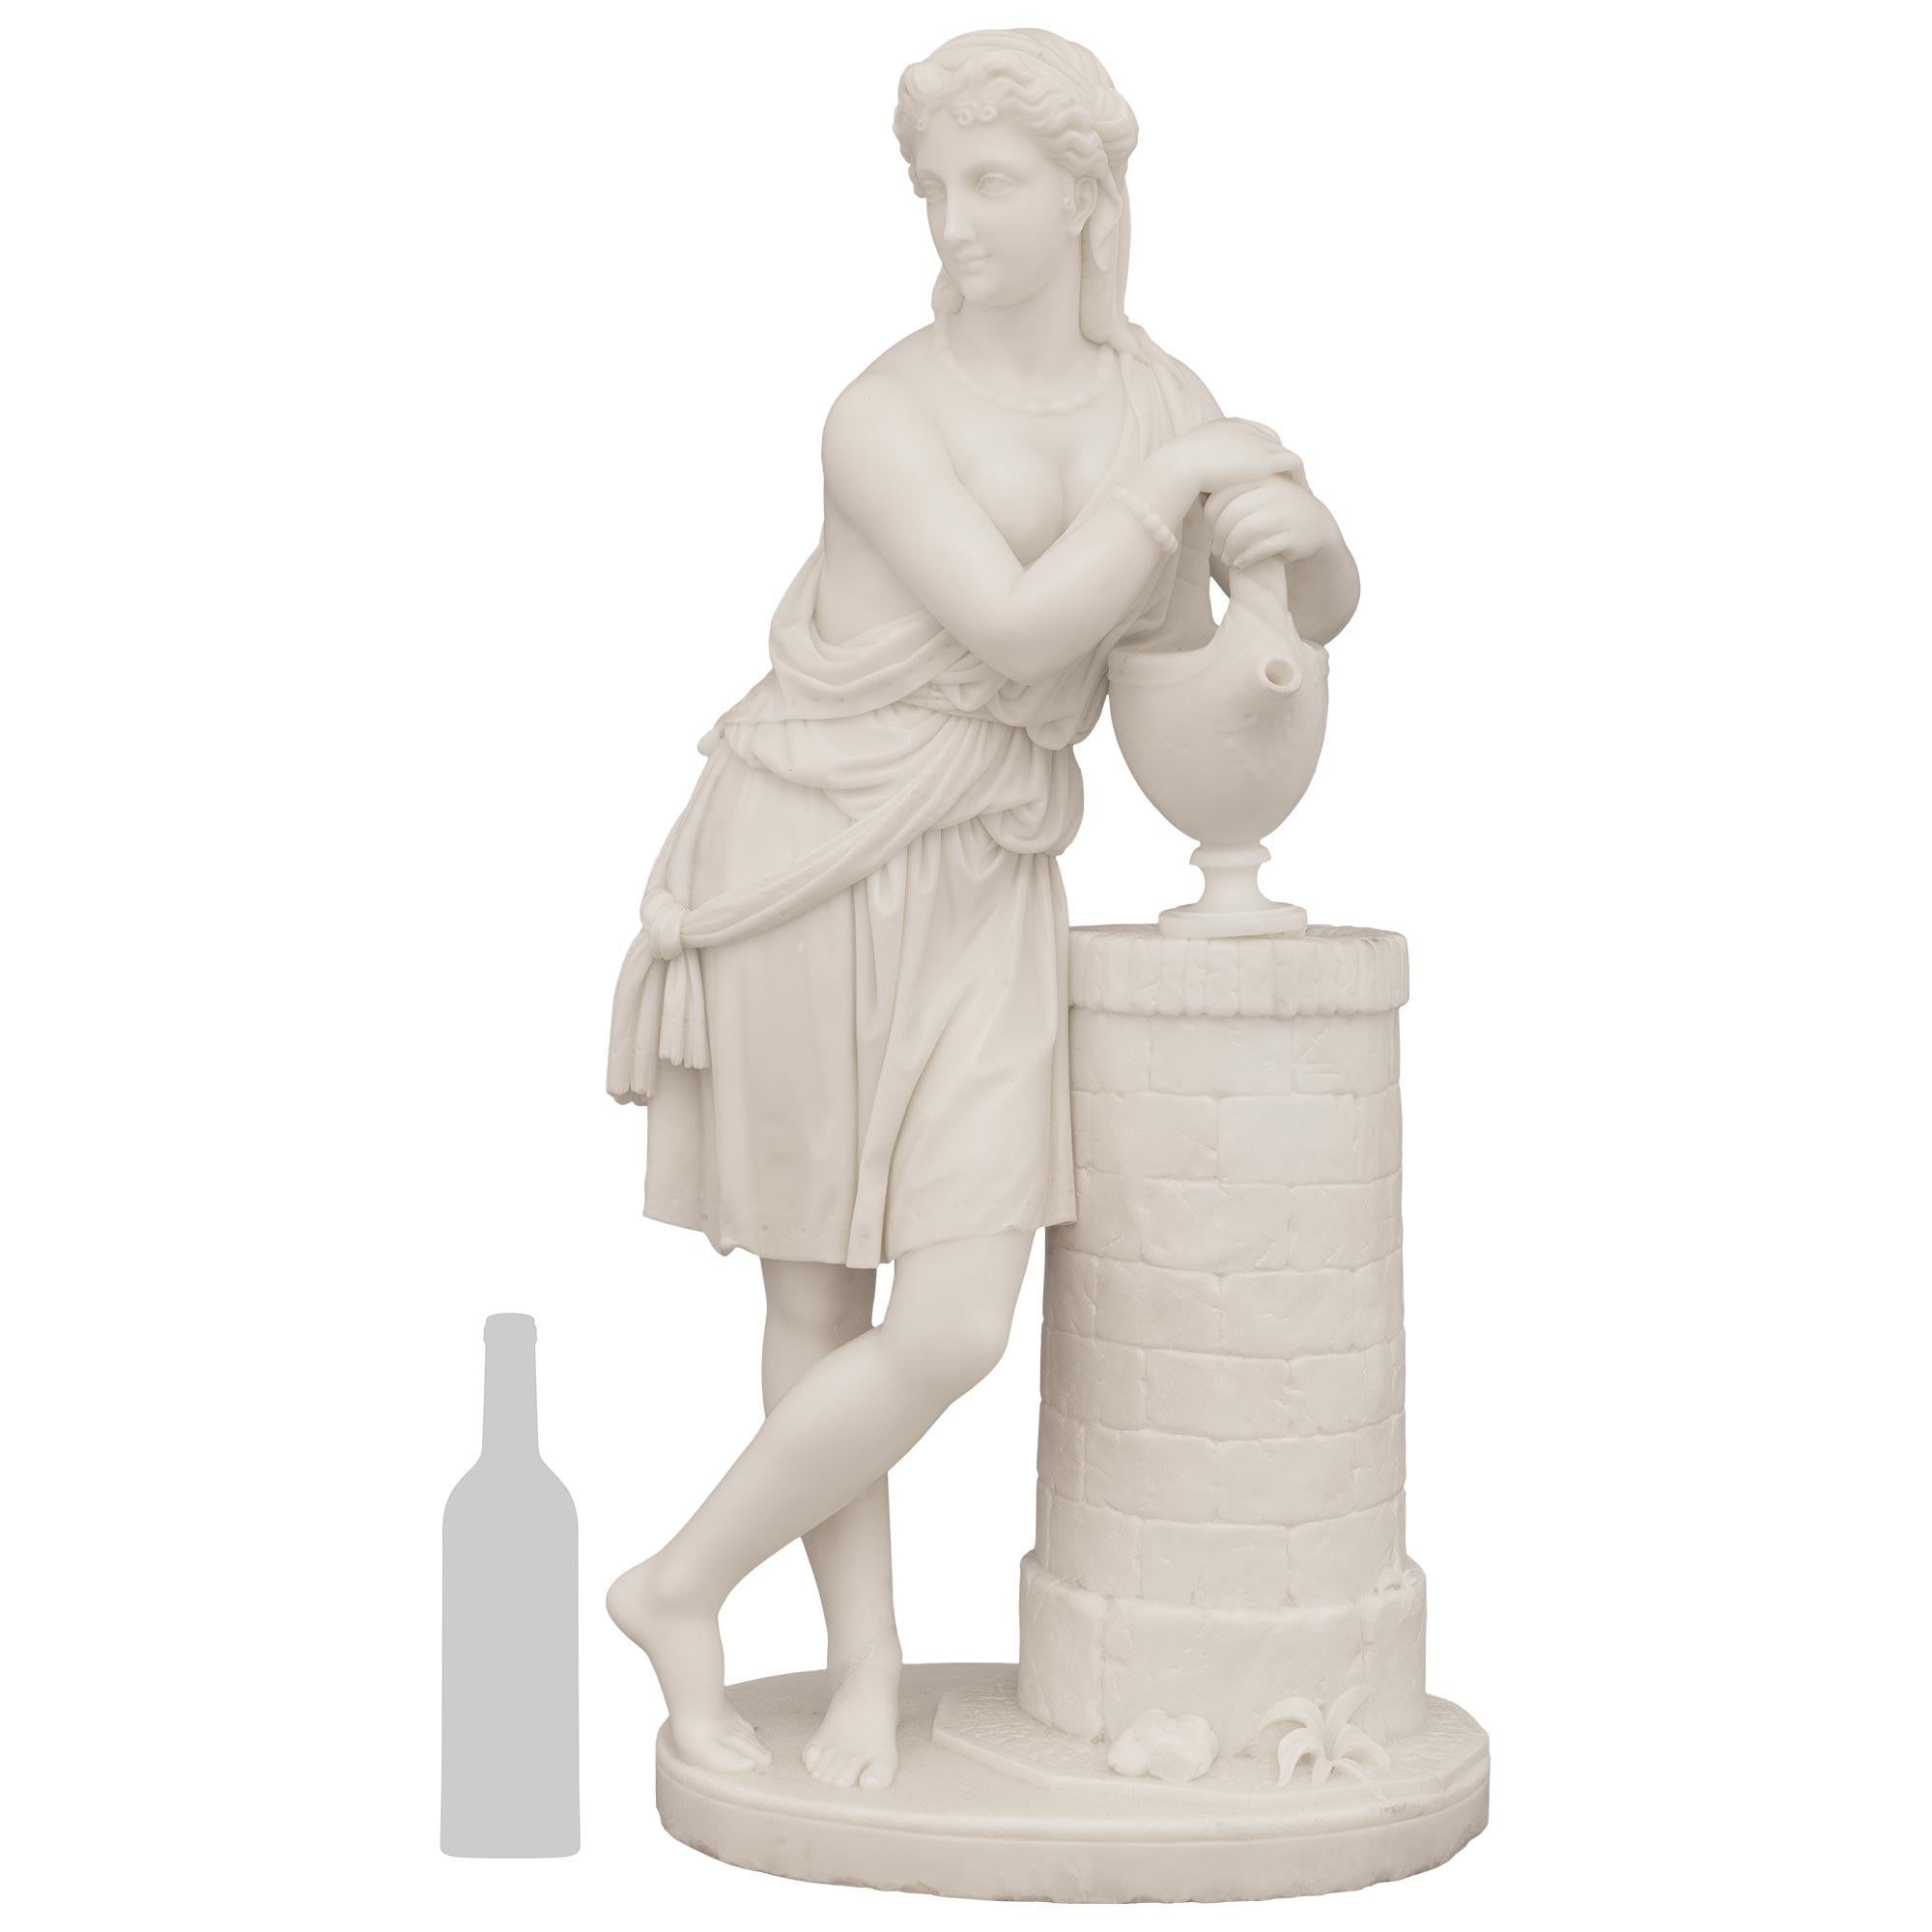 






Statue spectaculaire et très détaillée de Rebecca au puits en marbre blanc de Carrare, signée par Carmelo Fontana (1775-1825), datant du début du XIXe siècle. Rebecca se tient fièrement debout sur un socle en marbre de forme ovale avec des